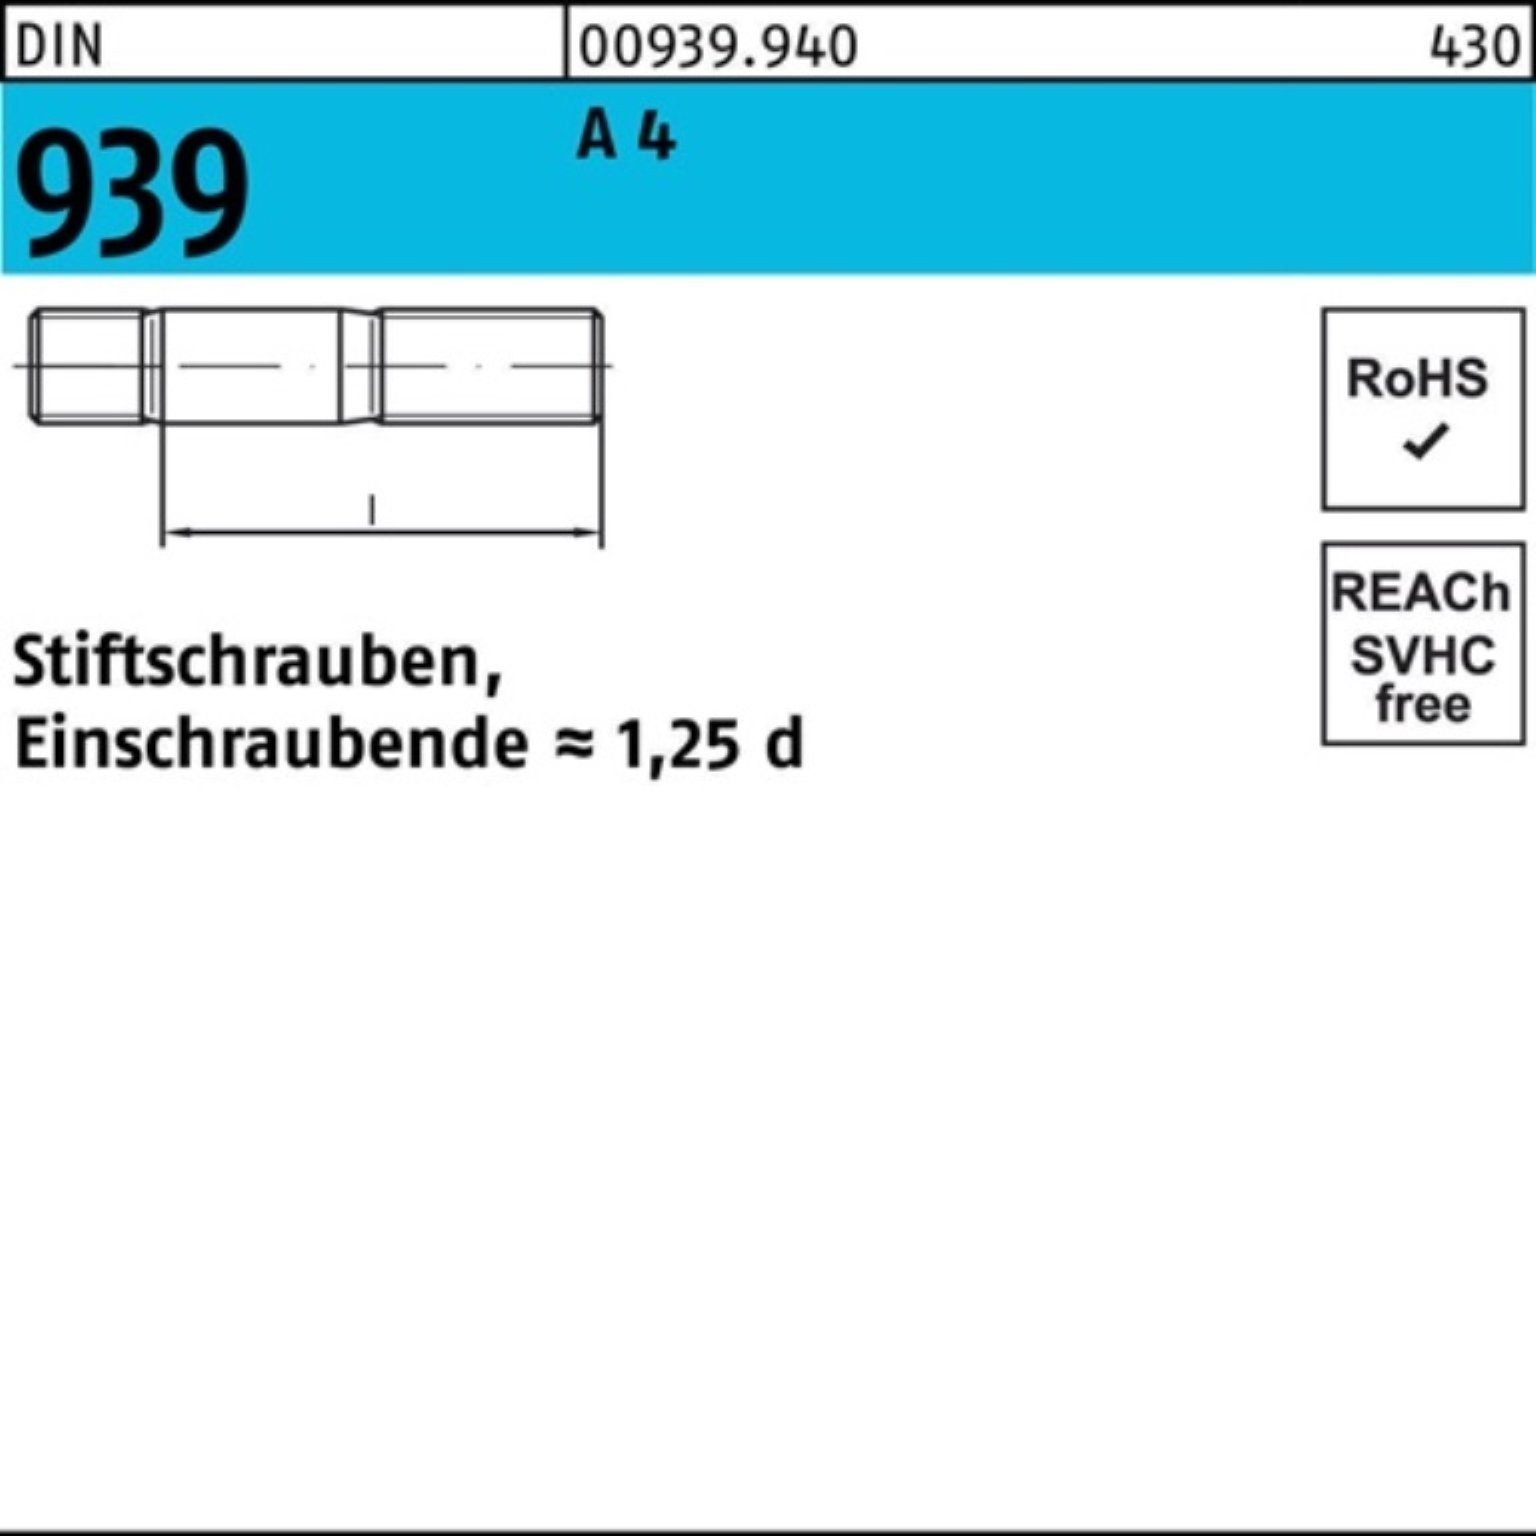 Reyher Stiftschraube 100er Stiftschraube DIN M8x 35 25 St Einschraubende=1,25d A Pack 939 4